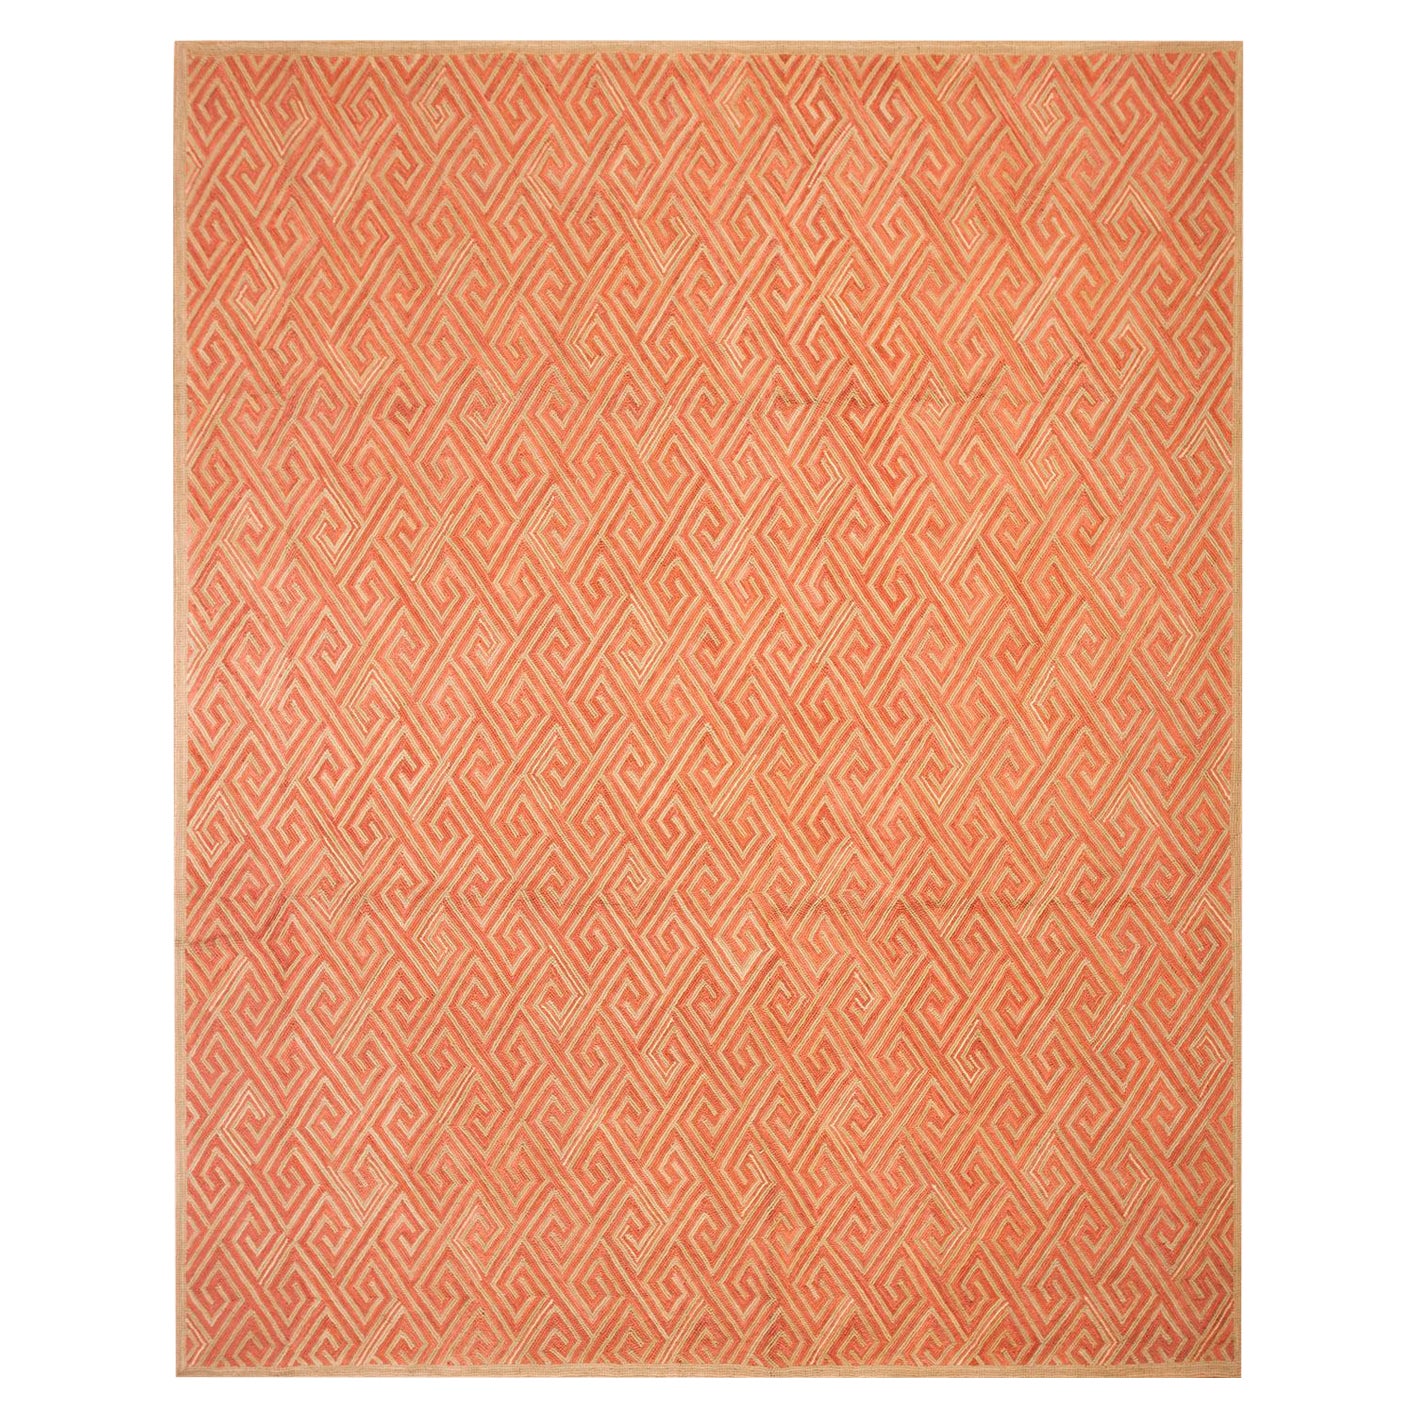 Handgefertigter Baumwoll-Hakenteppich ( 8' x 10' - 244 x 305cm )